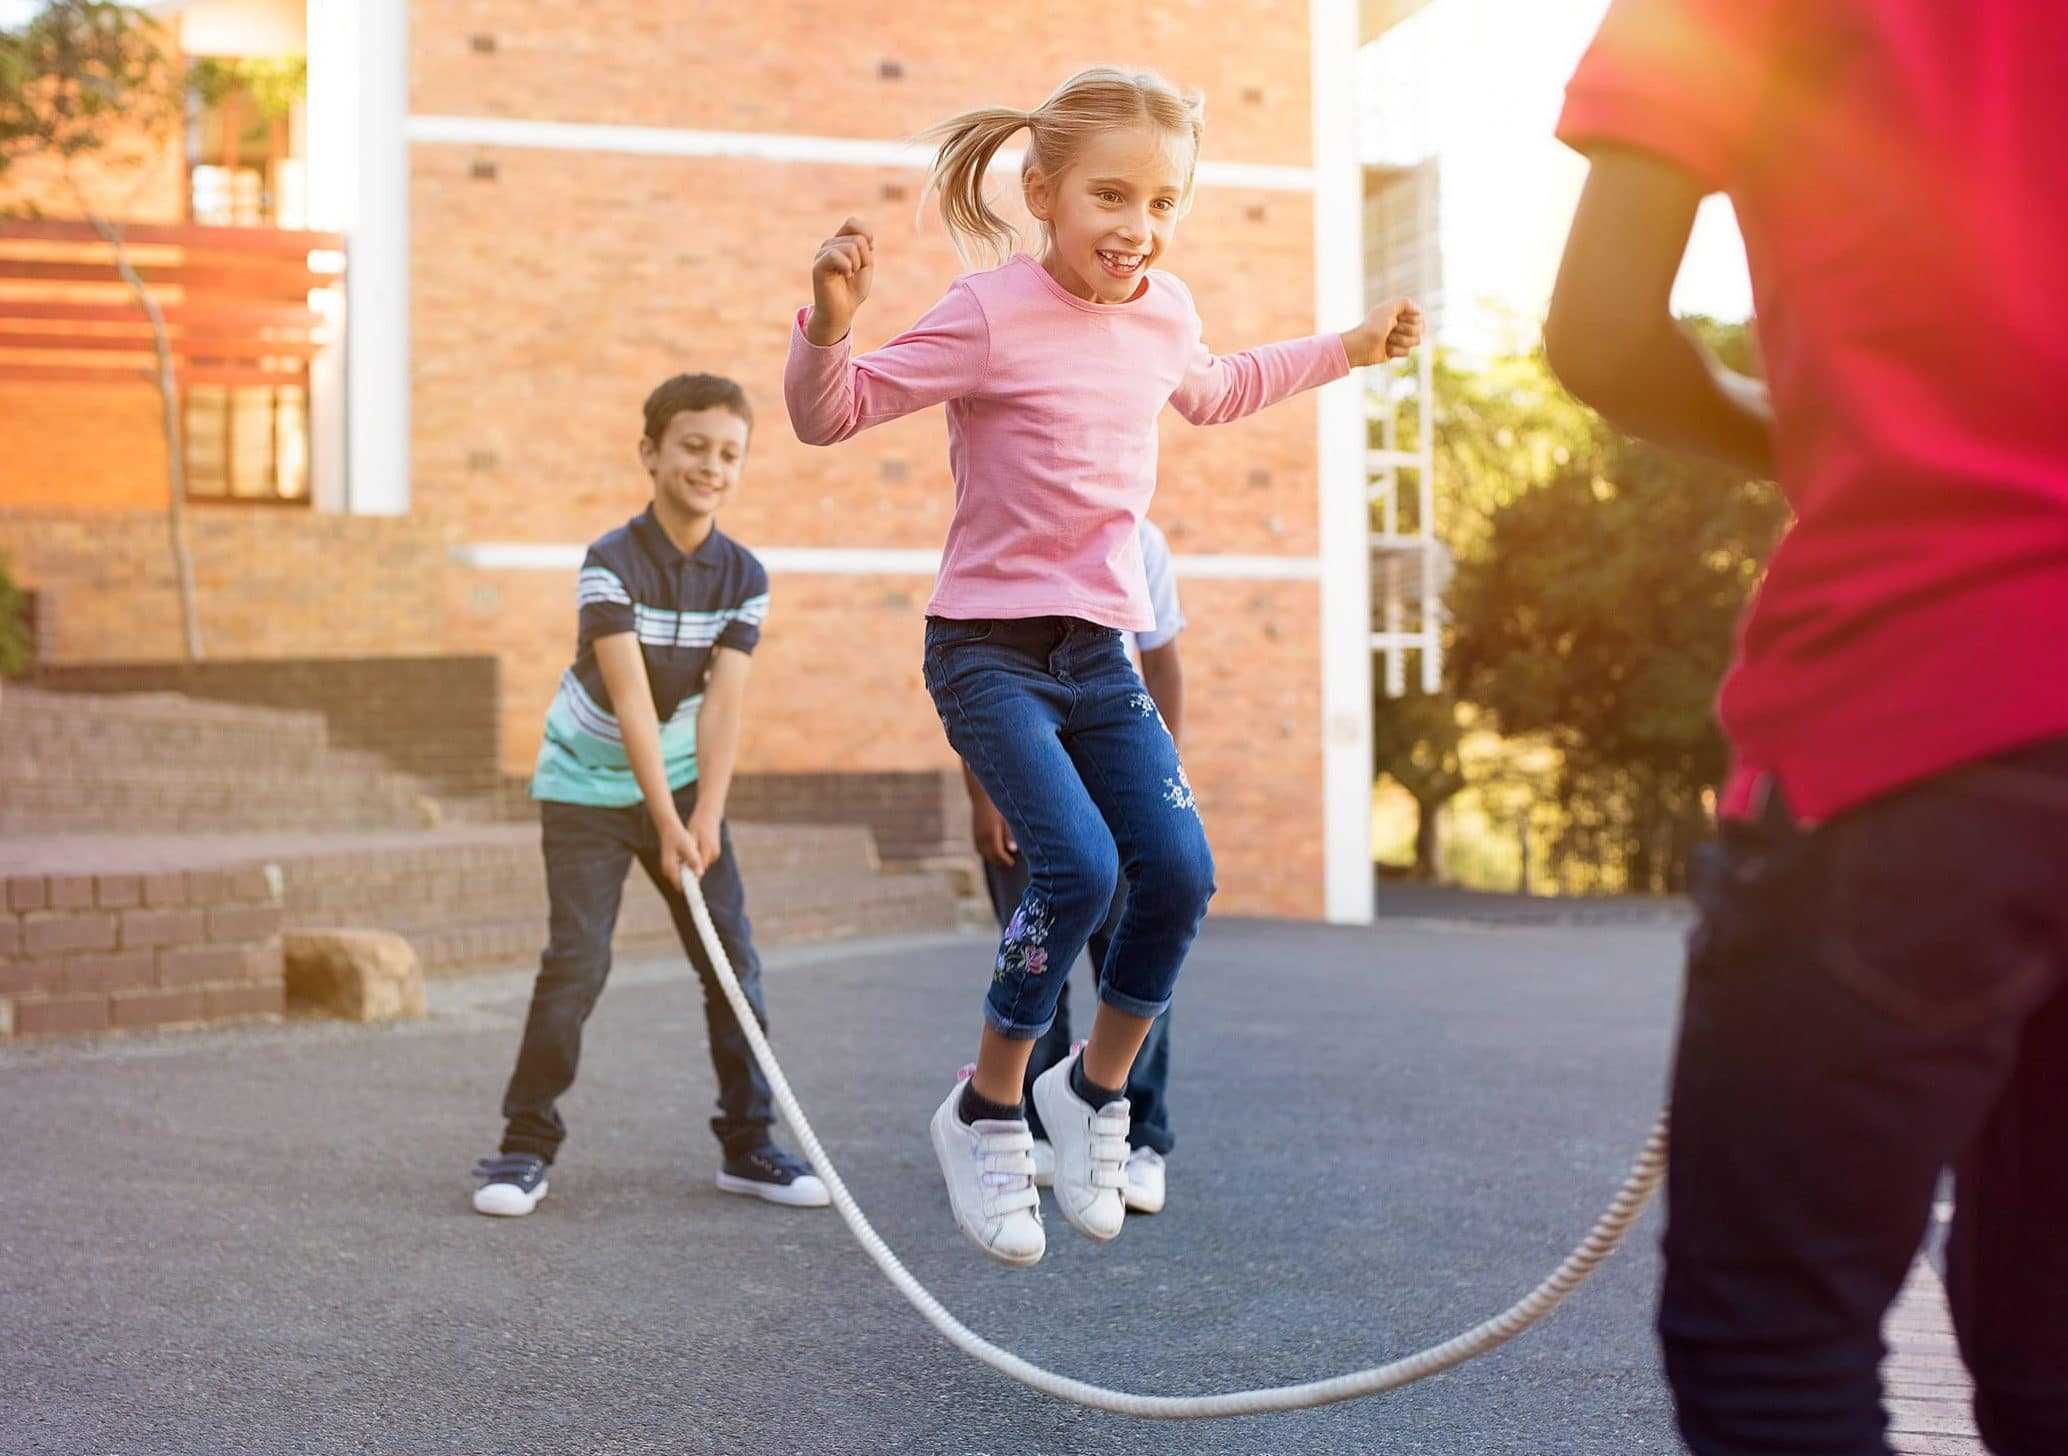 Игры со скакалкой существуют для детей всех возрастов - от малышей до школьников Расскажем, в чем польза таких игр, и приведем несколько примеров, подходящих для дома и улицы